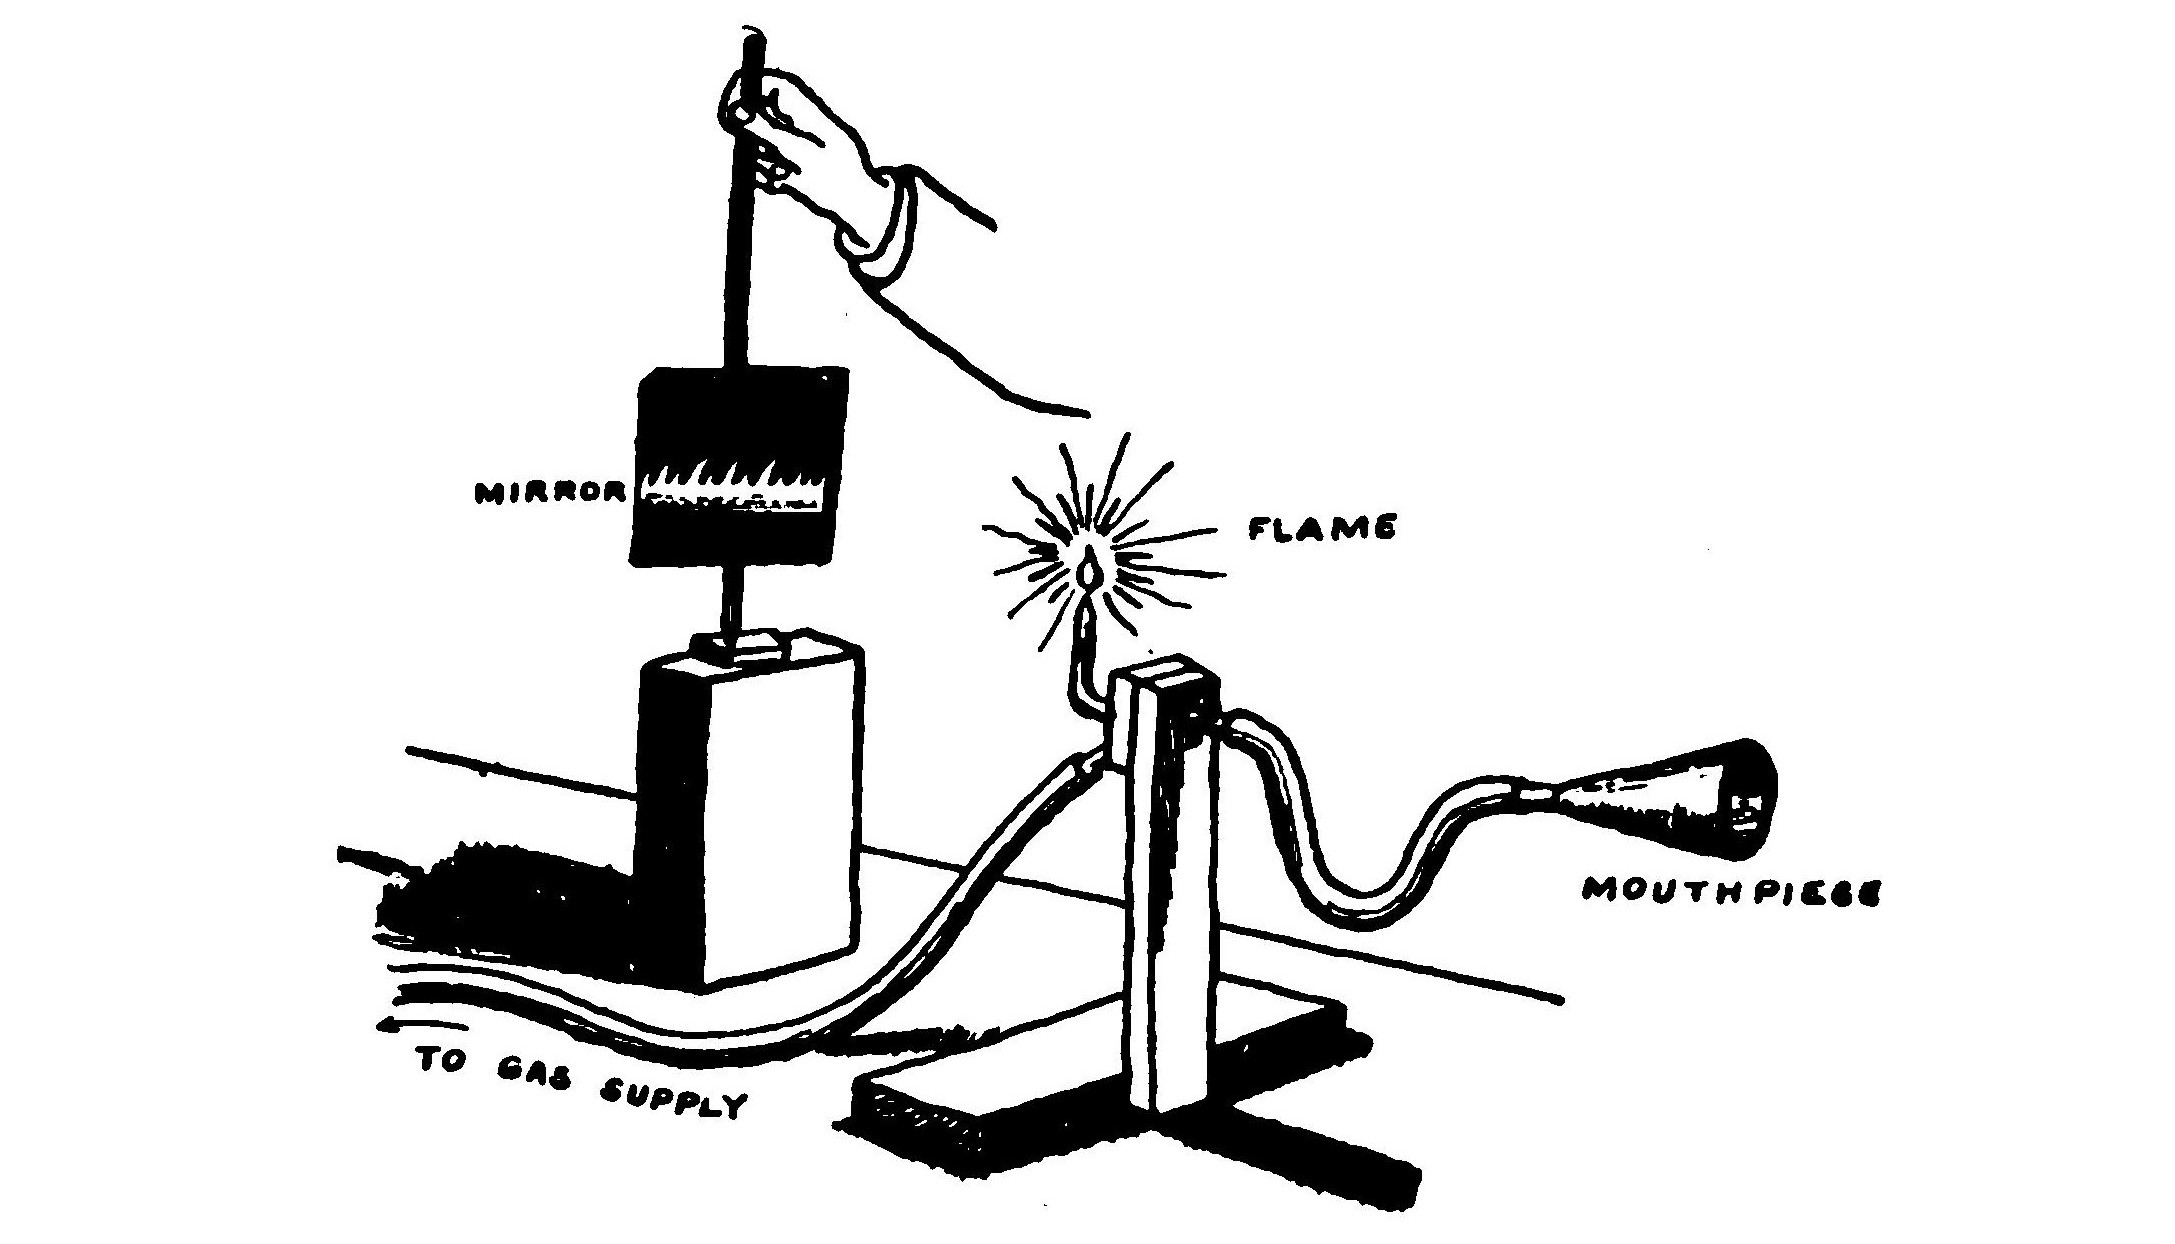 FIG. 129.—Koenig's manometric flame apparatus.